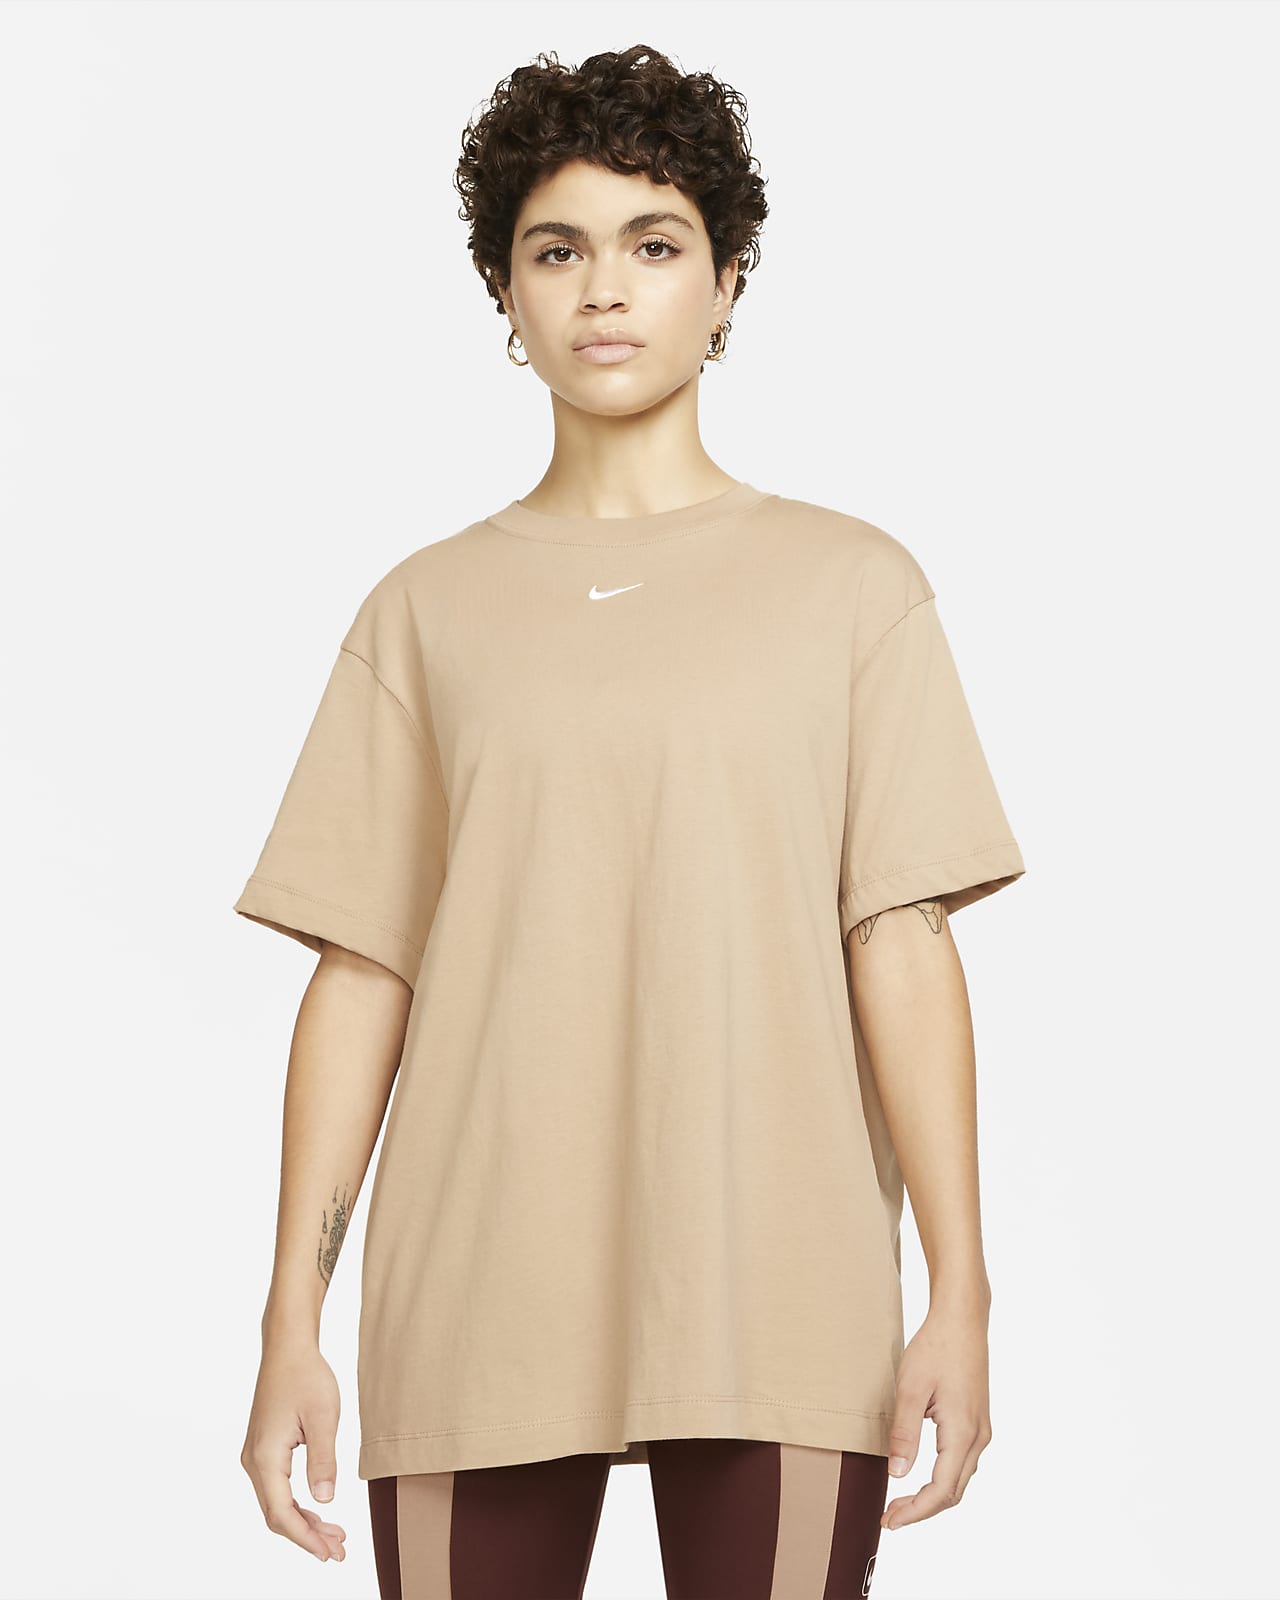 Nike Sportswear Essential Women's Oversized Short-Sleeve Top